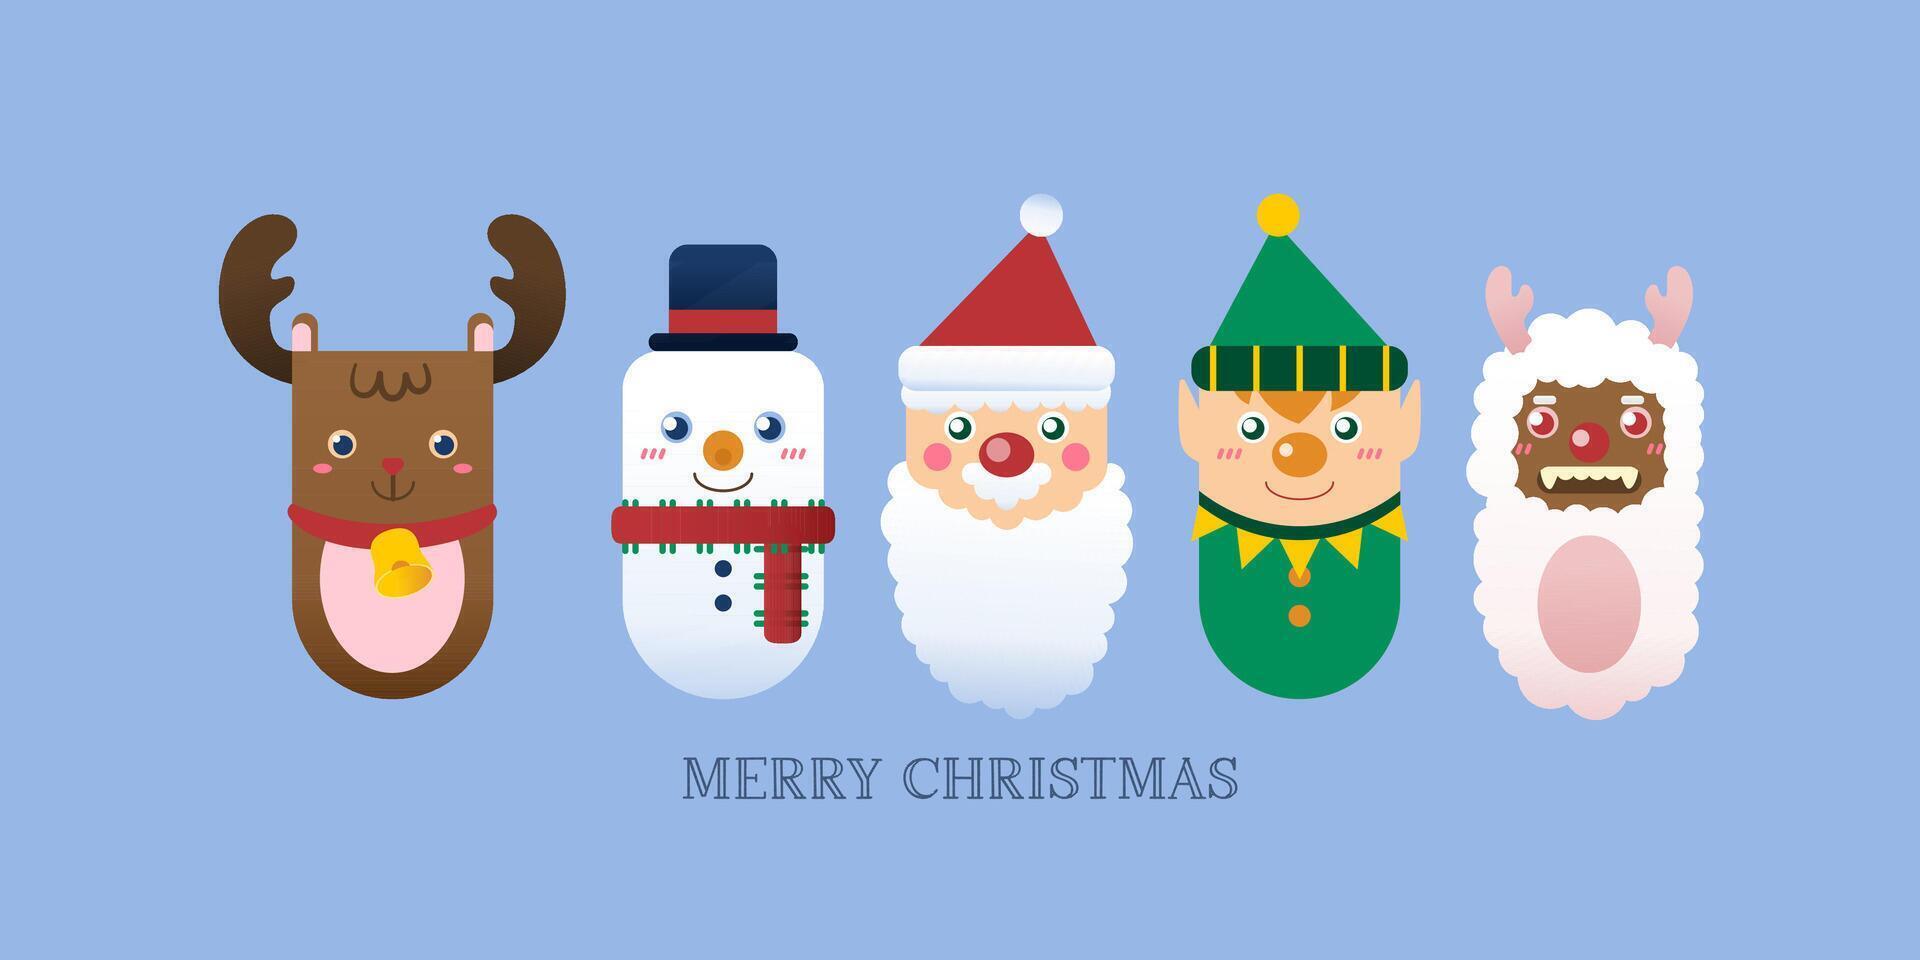 icono de navidad con renos, santa claus, bola de nieve, ovejas y ayudante de santa vector